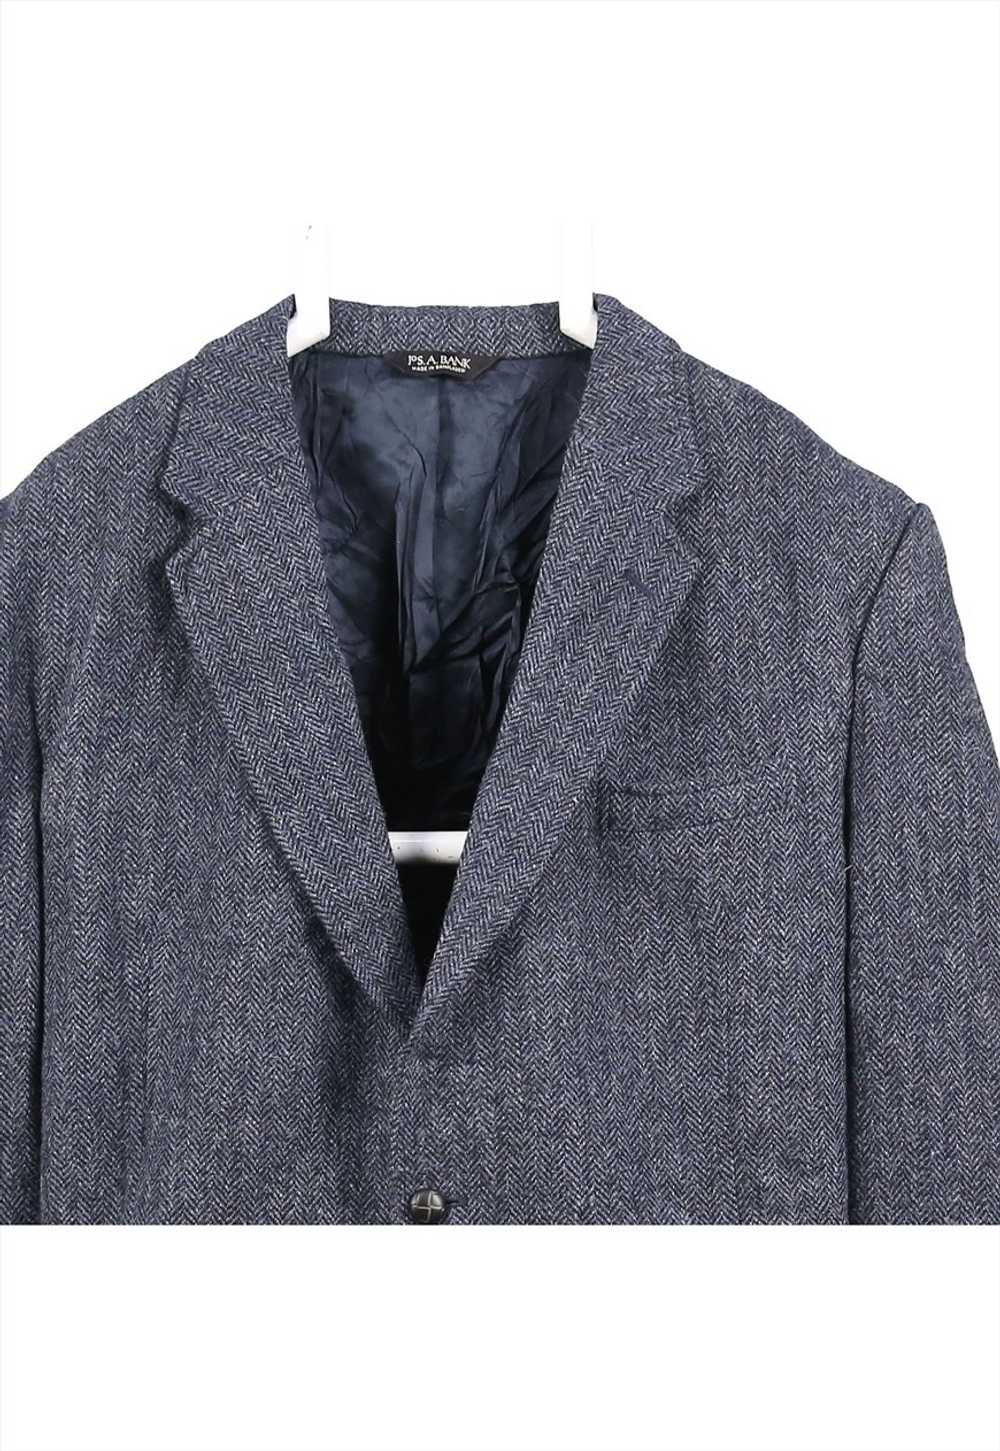 Vintage 90's Harris Tweed Blazer Tweed Wool Jacke… - image 3